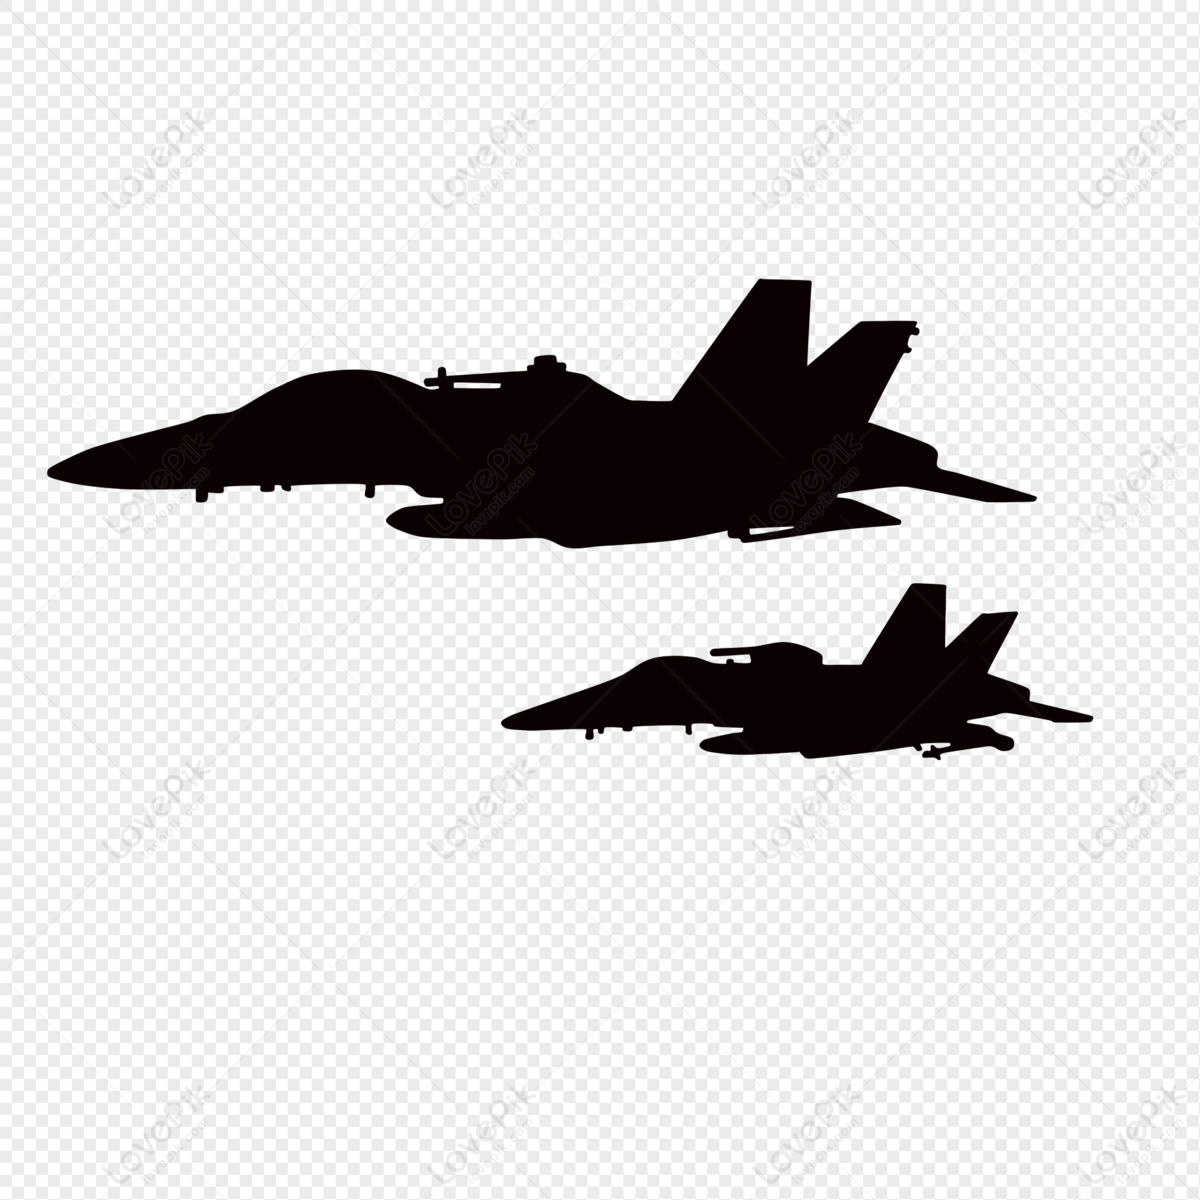 Chiến đấu cơ tàng hình F-35 Lightning II - Dòng máy bay chiến đấu tương lai  của Mỹ - Tạp chí Tài chính